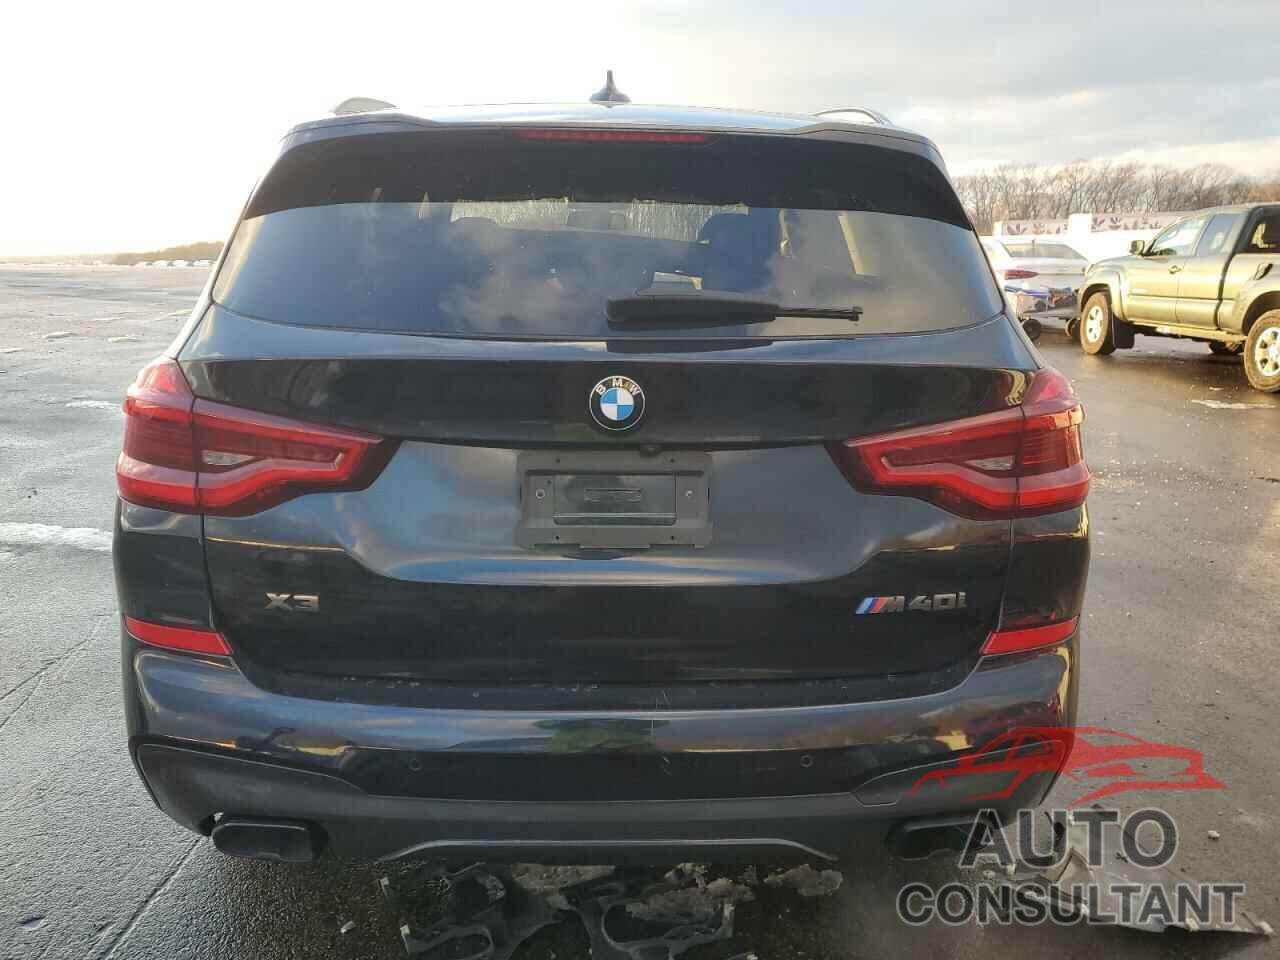 BMW X3 2021 - 5UXTY9C01M9F99113